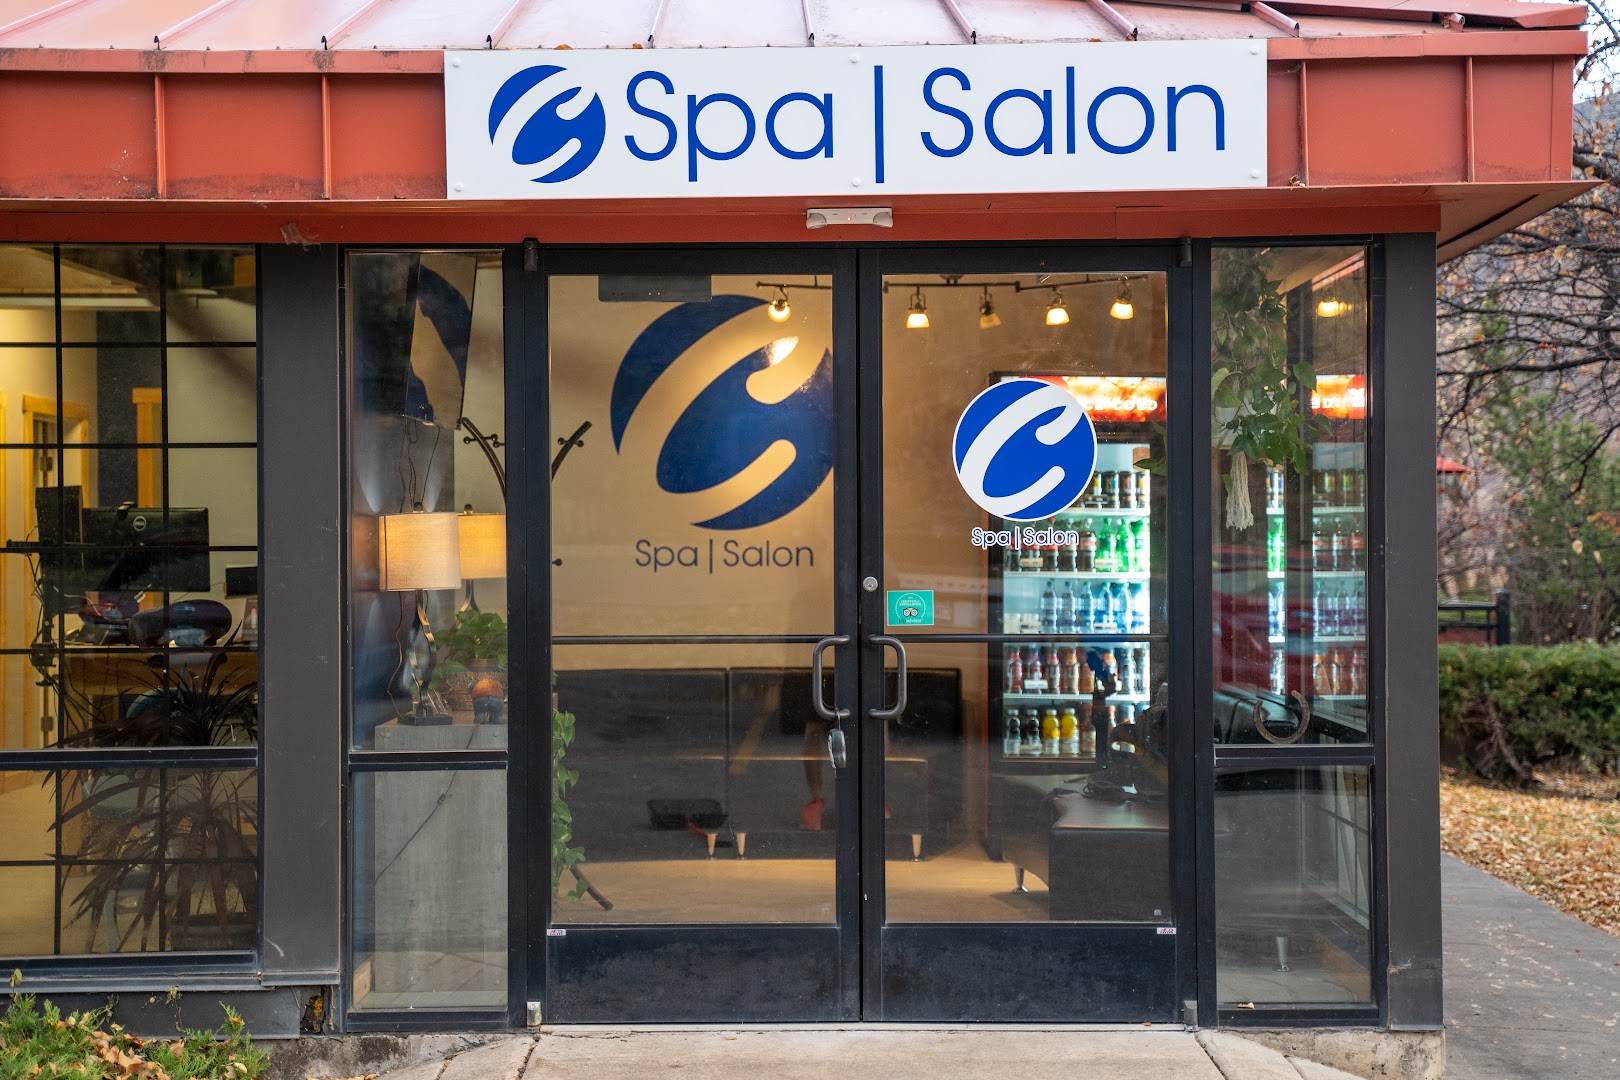 C Spa and Salon